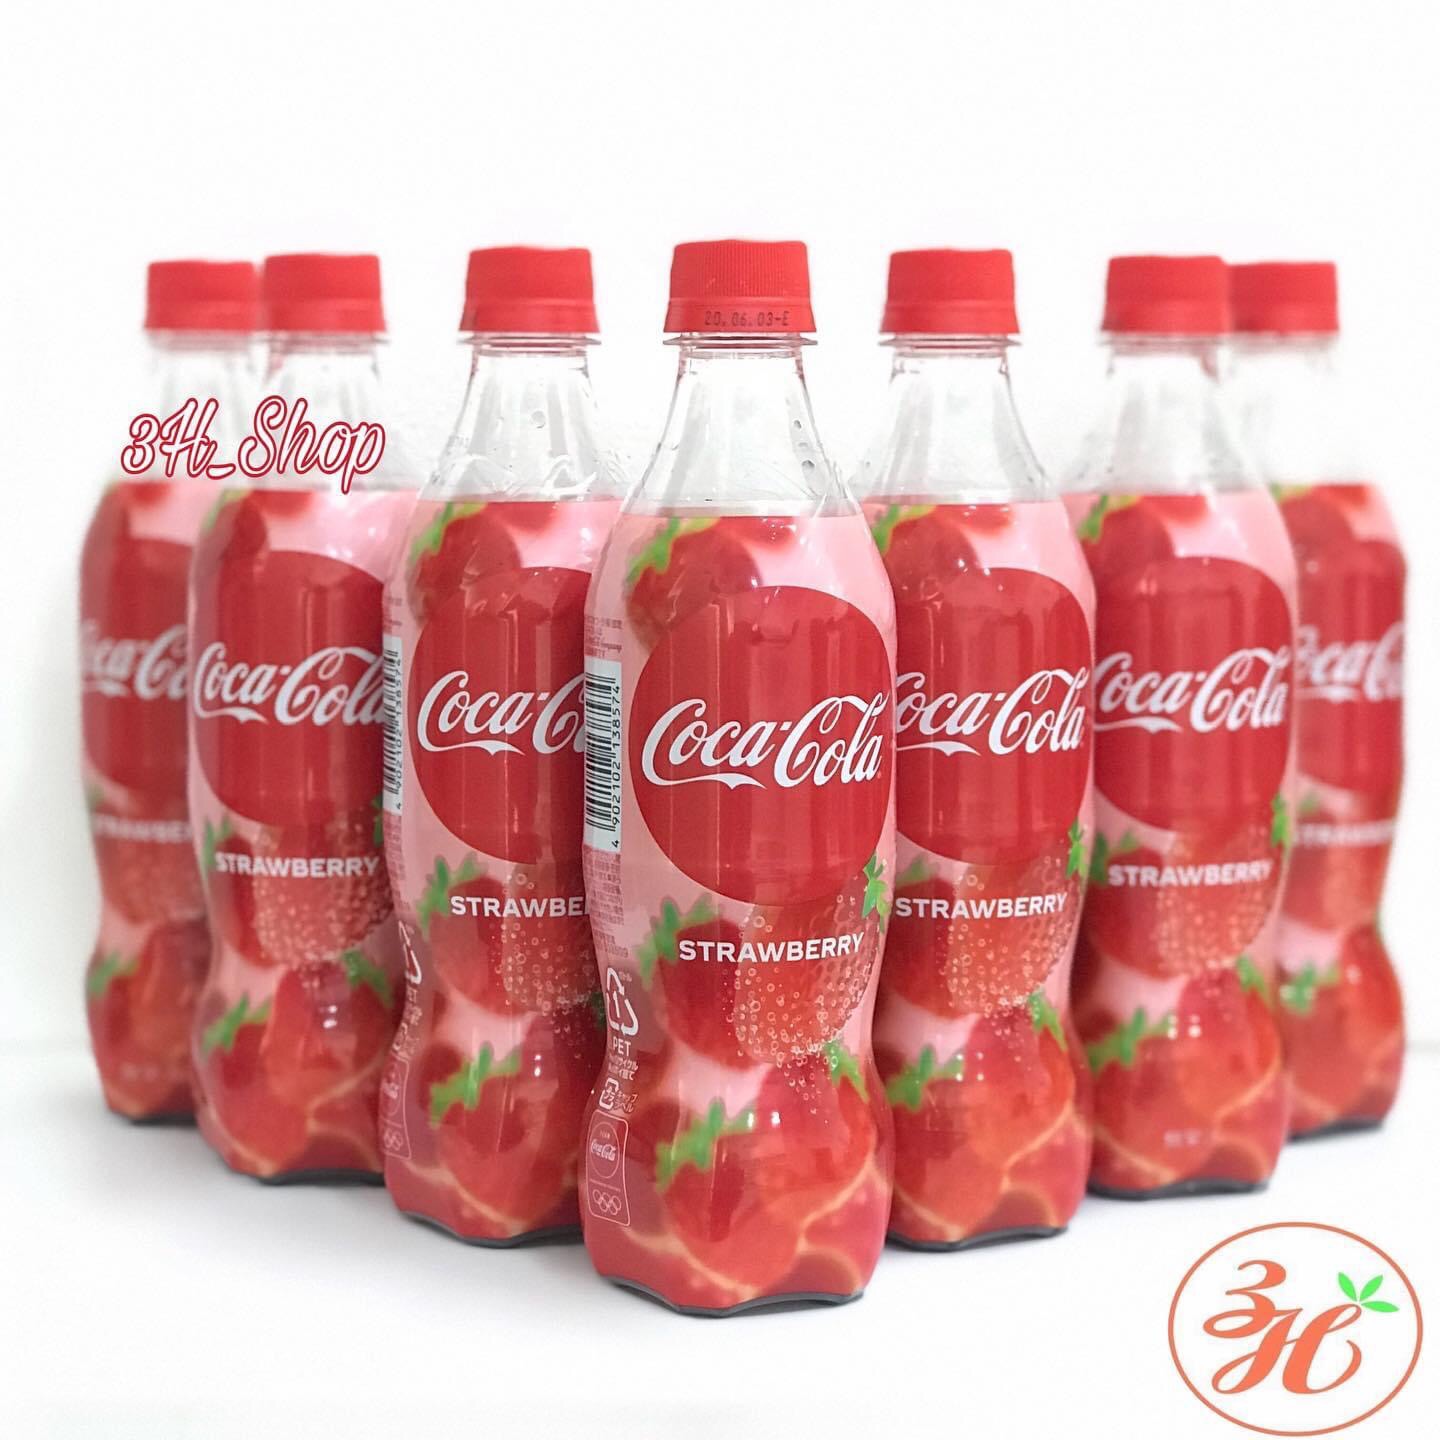 CoCa cola vị dâu hàng nhập khẩu Nhật bản